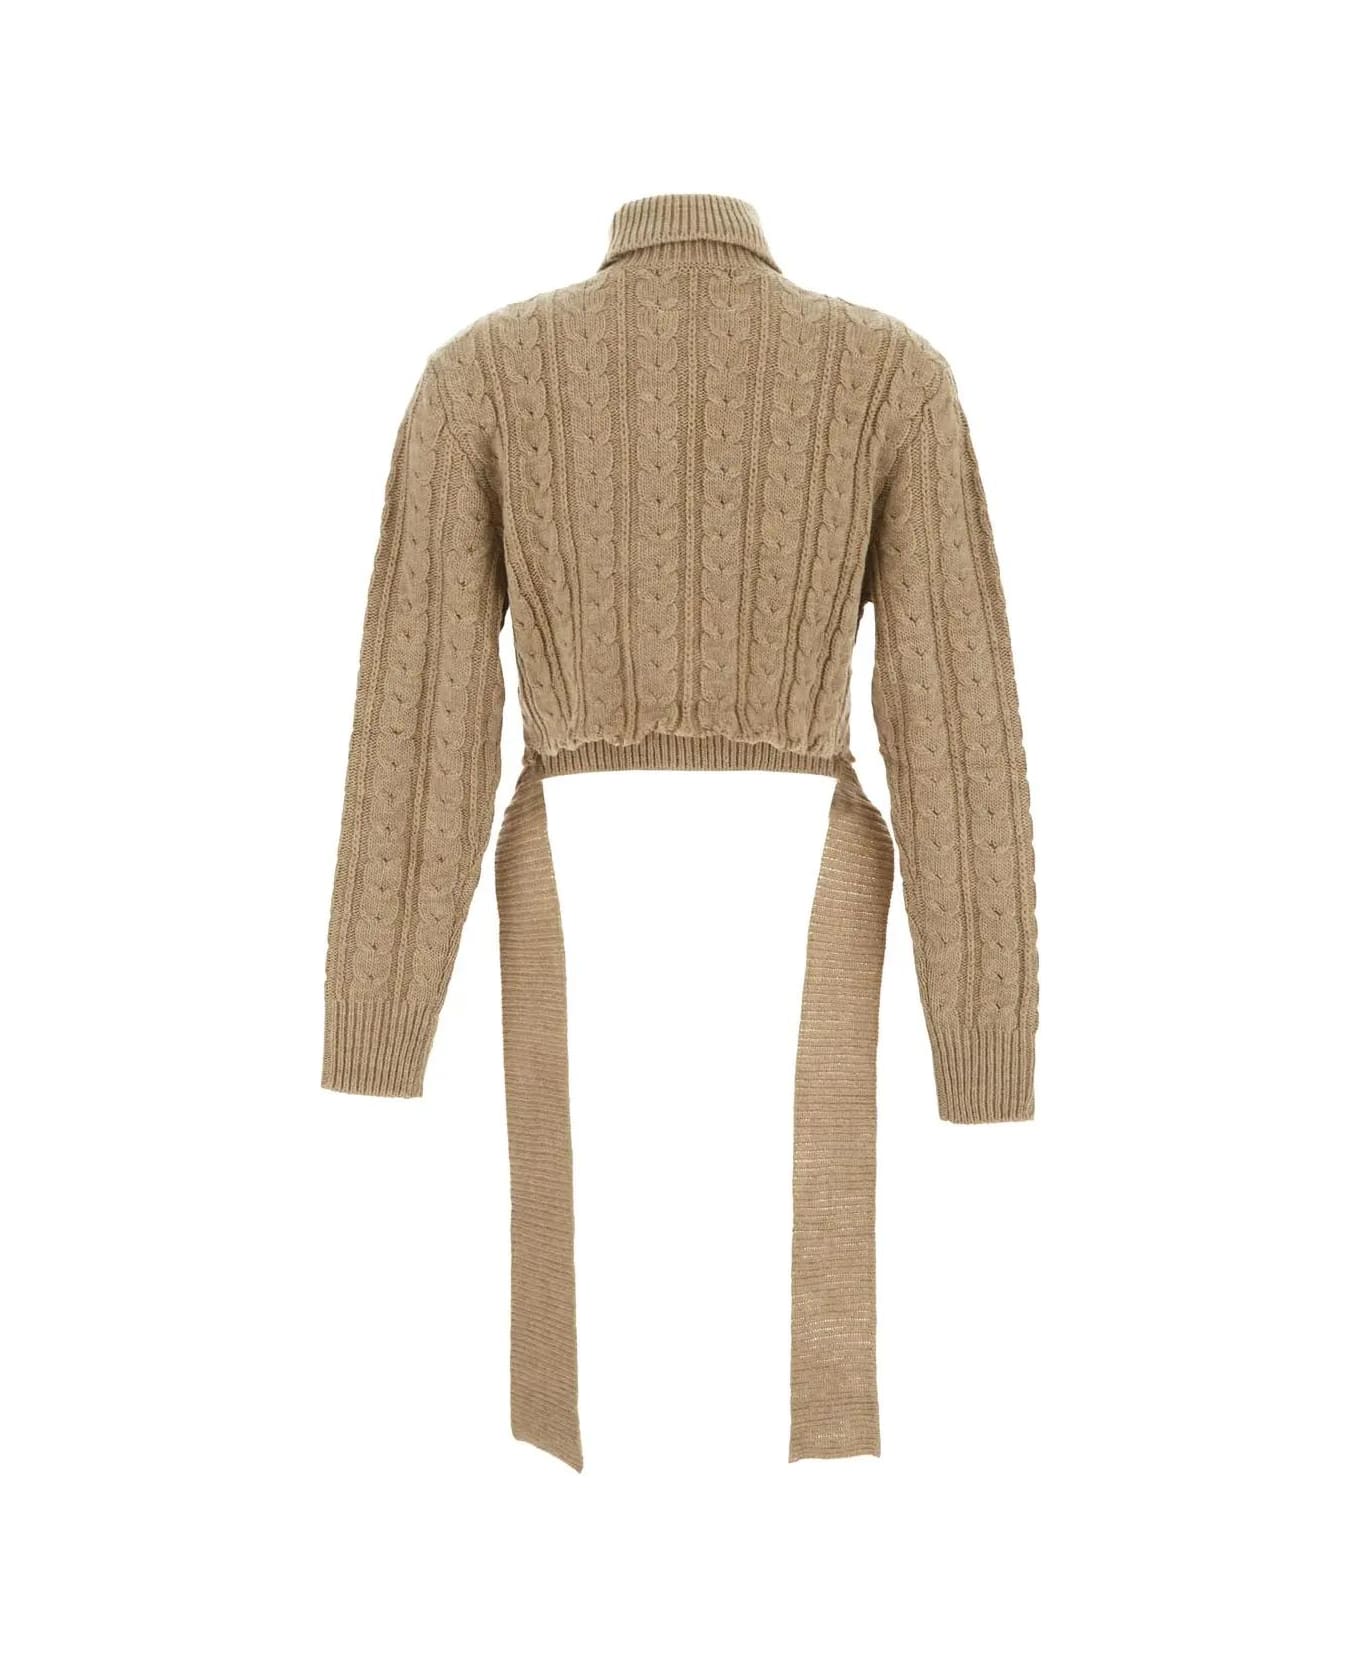 Maison Margiela Wool Blend Turtleneck Sweater - Beige